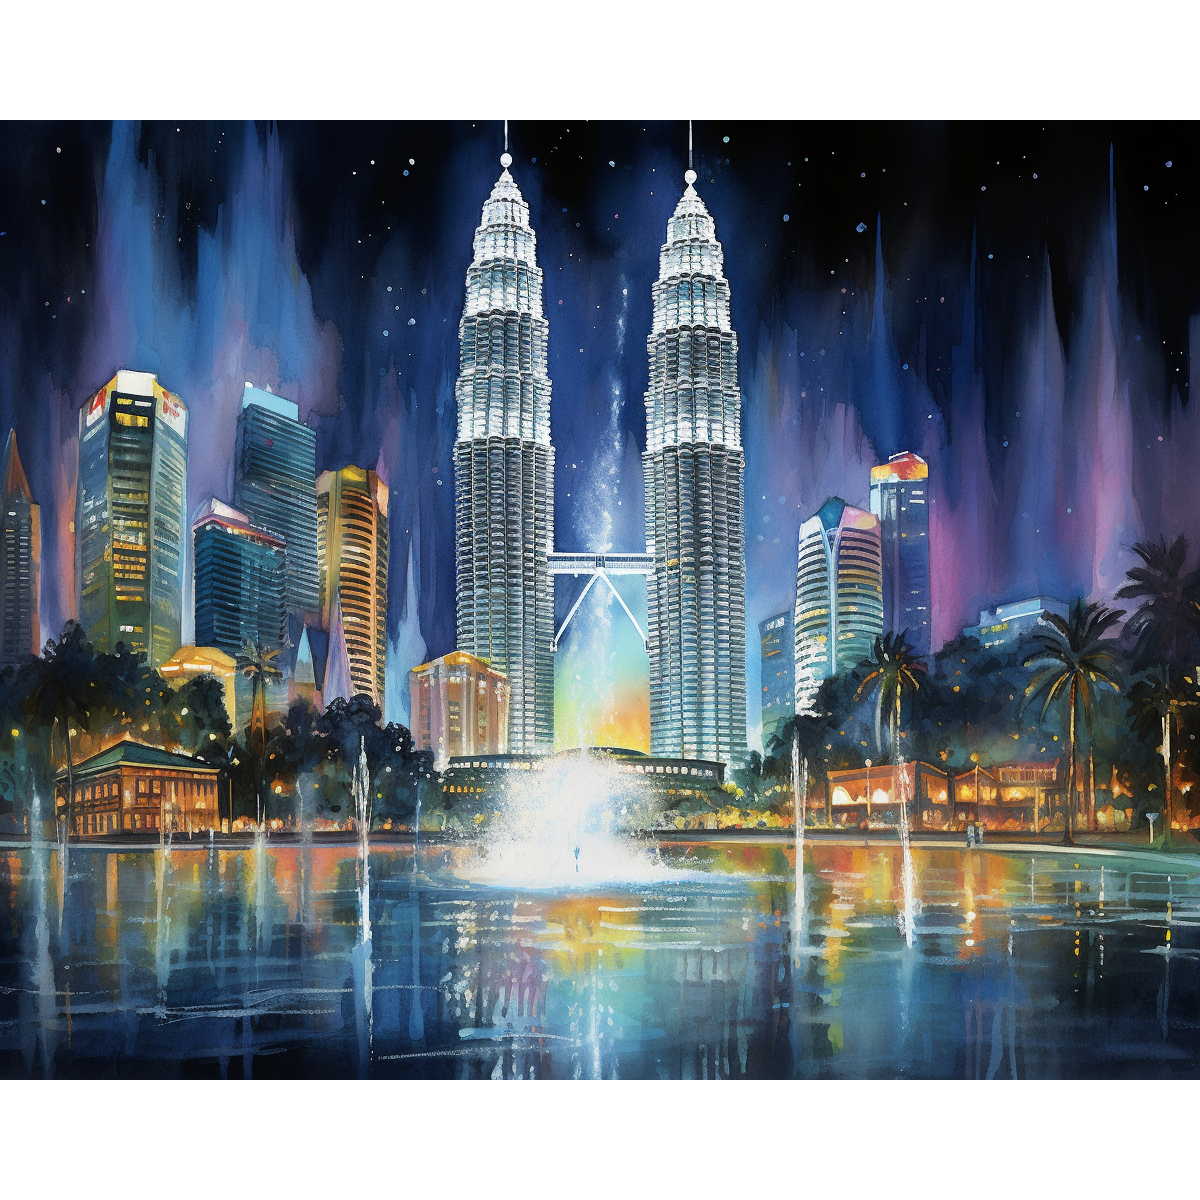 Malaisia Petronas Towers